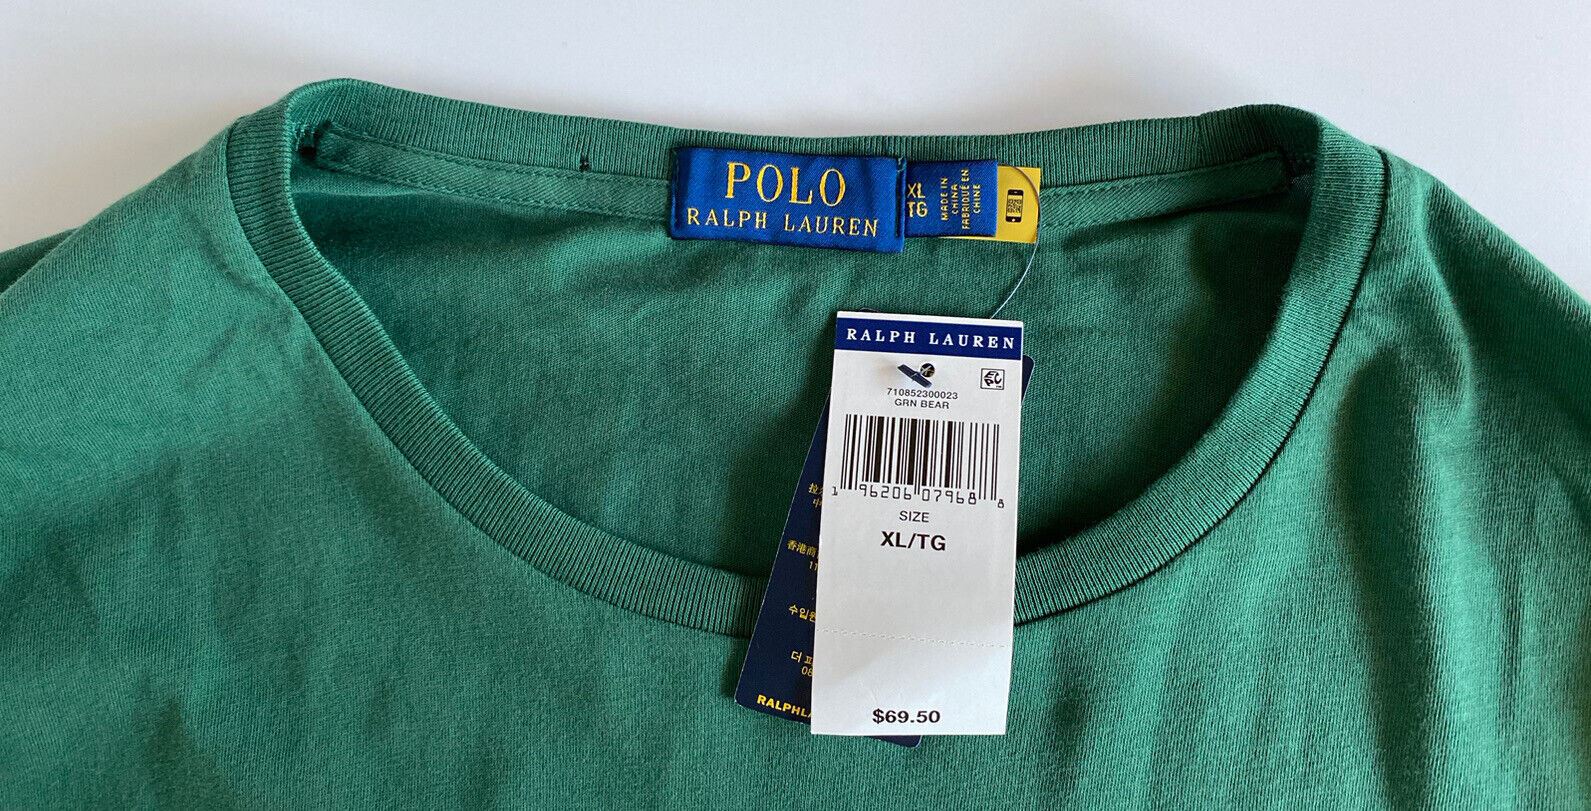 Neu mit Etikett: Polo Ralph Lauren Bären-T-Shirt, Grün, XL/TG